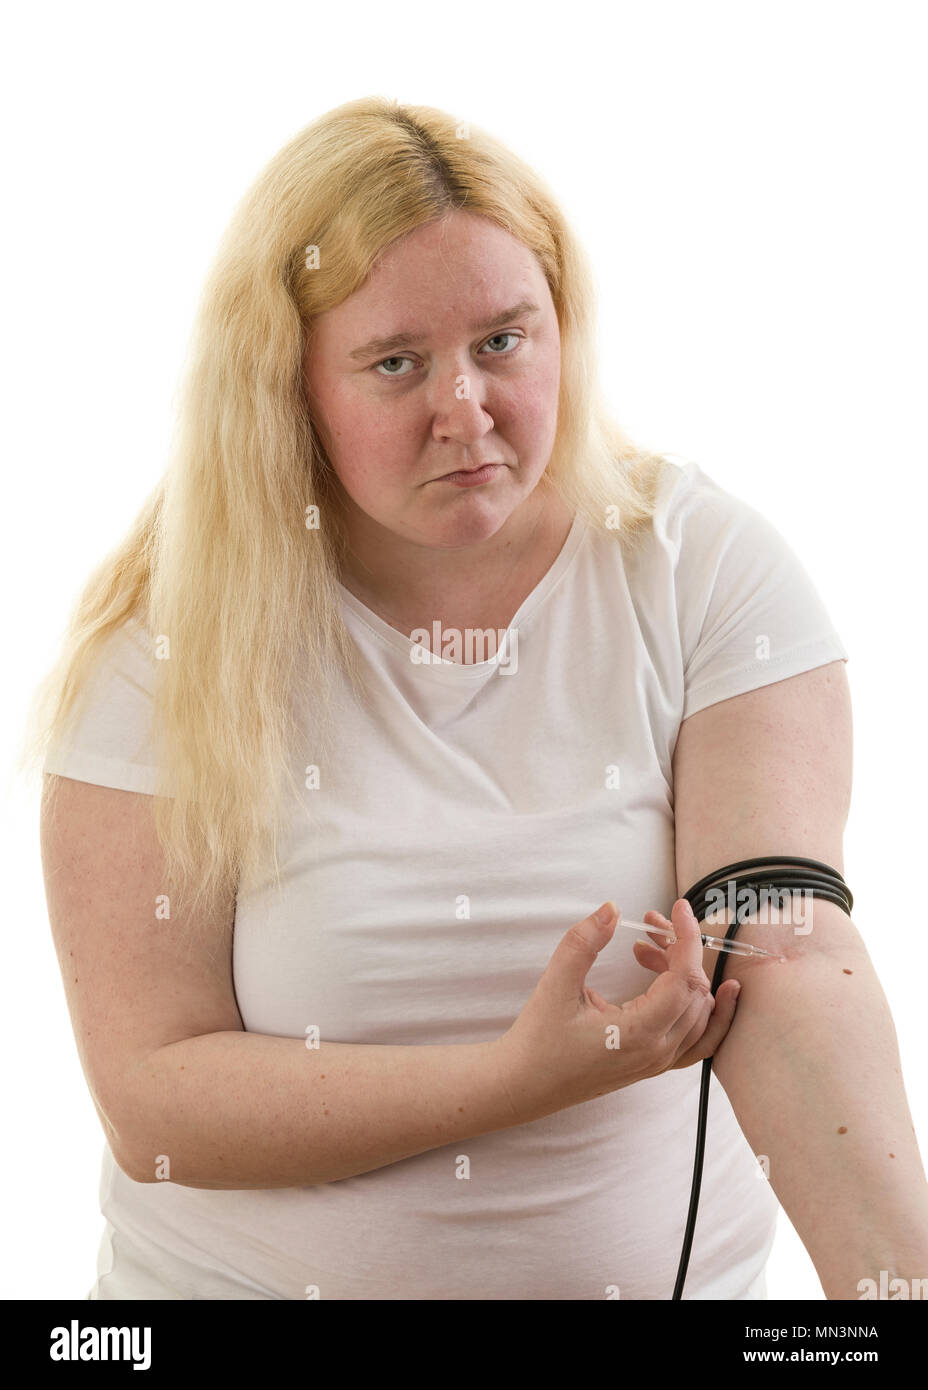 Junge kaukasier blond weiblich Frau gefesselt Arm mit Kautschukband und selbst injizieren in Arm mit Spritze auf weißem Hintergrund Model Release: Ja. Property Release: Nein. Stockfoto